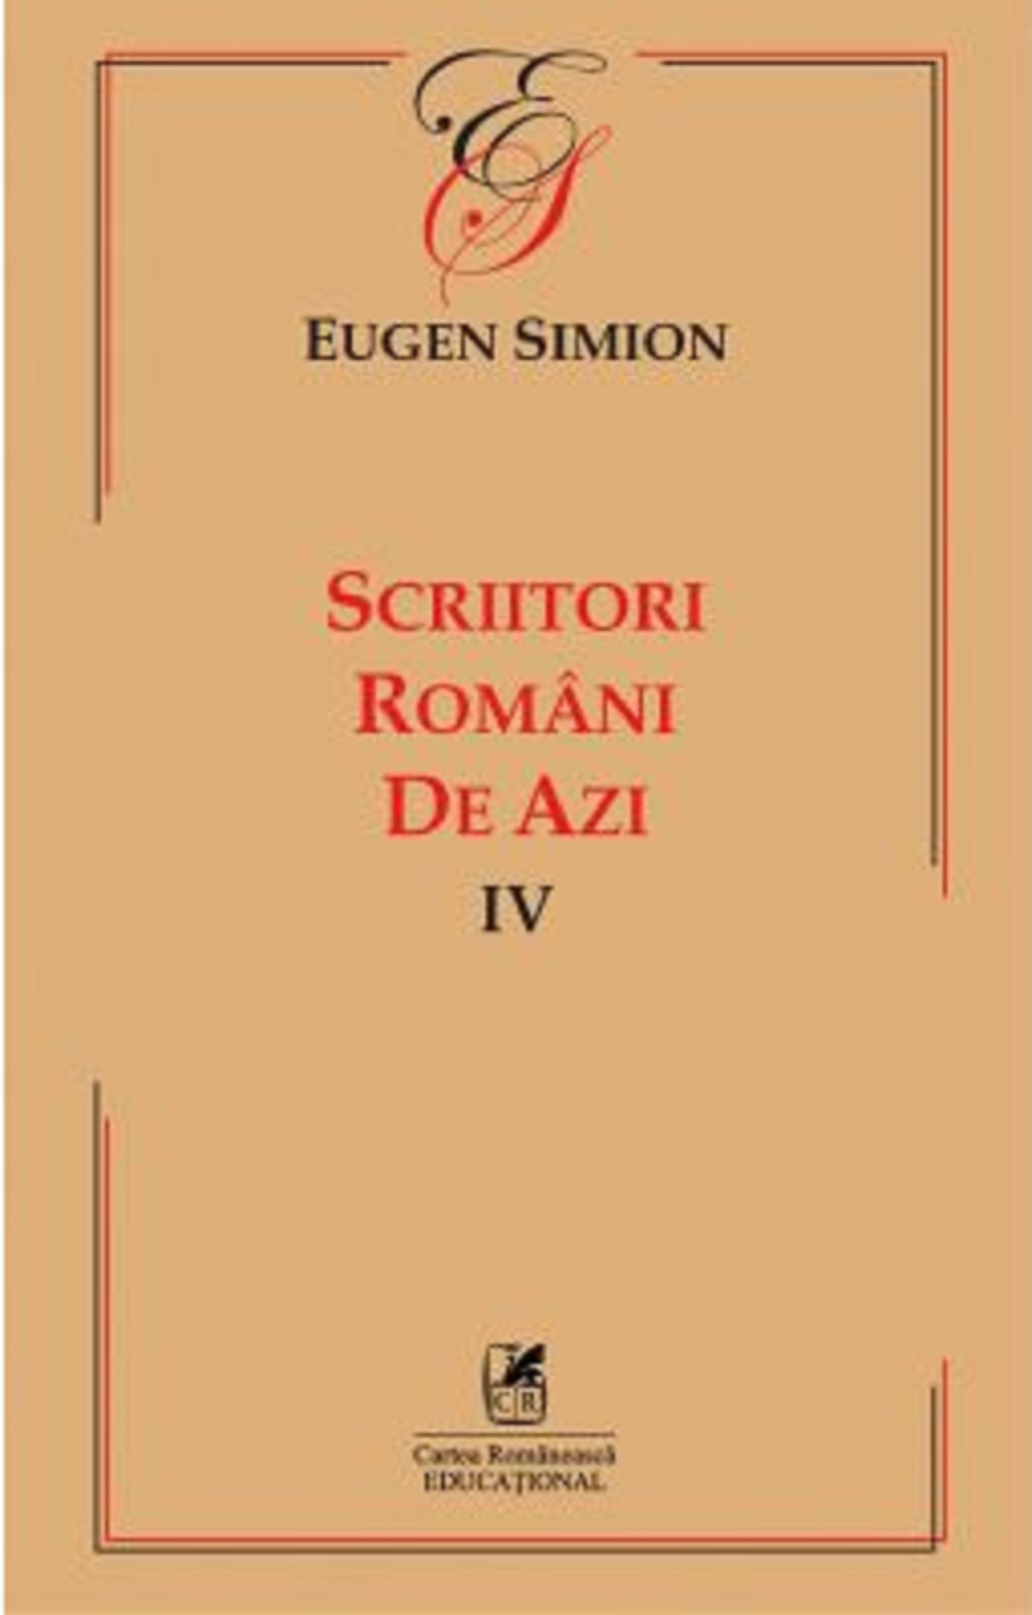 Scriitorii romani de azi IV | Eugen Simion Cartea Romaneasca